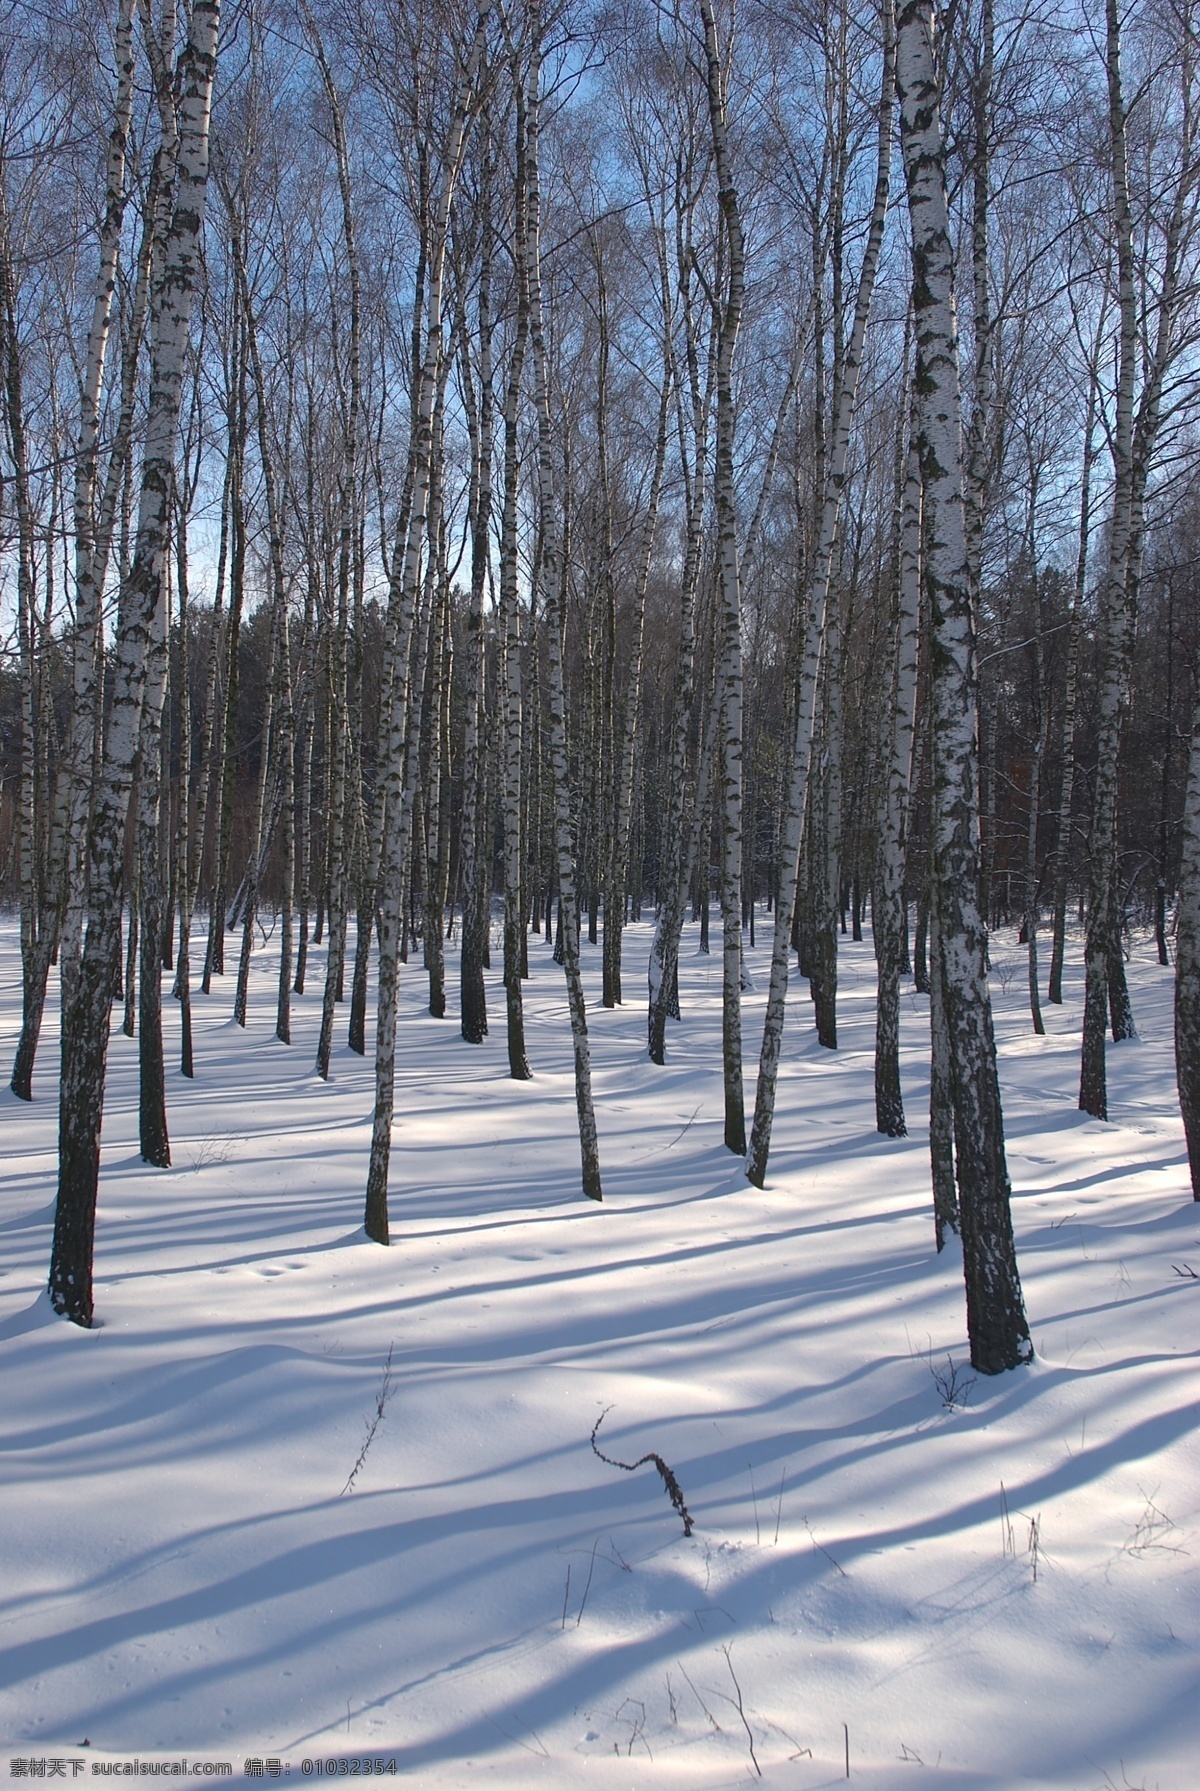 美丽冬天雪景 冬天雪景 冬季 美丽风景 美丽雪景 白雪 积雪 风景摄影 树木 树林 雪地 自然风景 自然景观 黑色